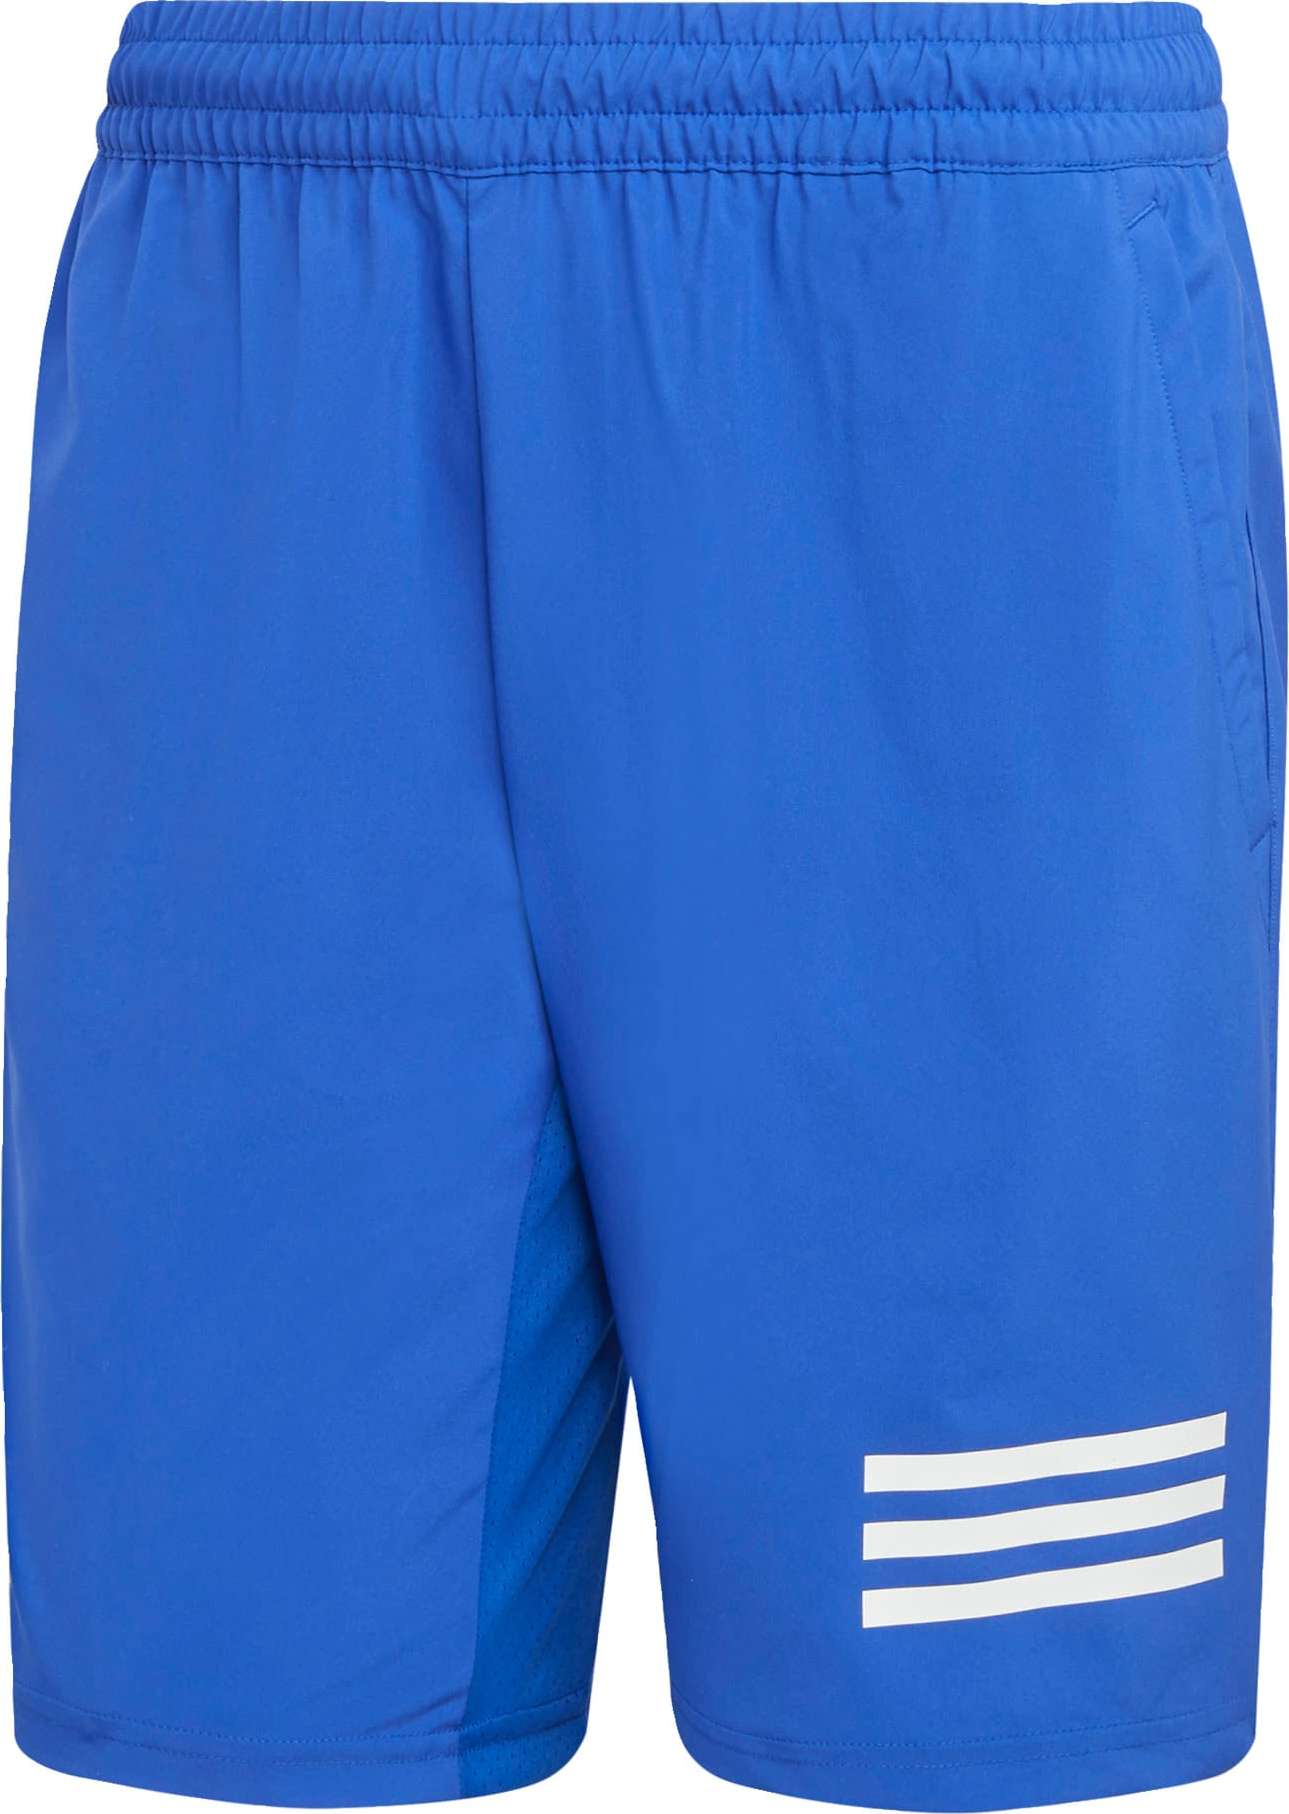 ADIDAS PERFORMANCE Sportovní kalhoty královská modrá / bílá